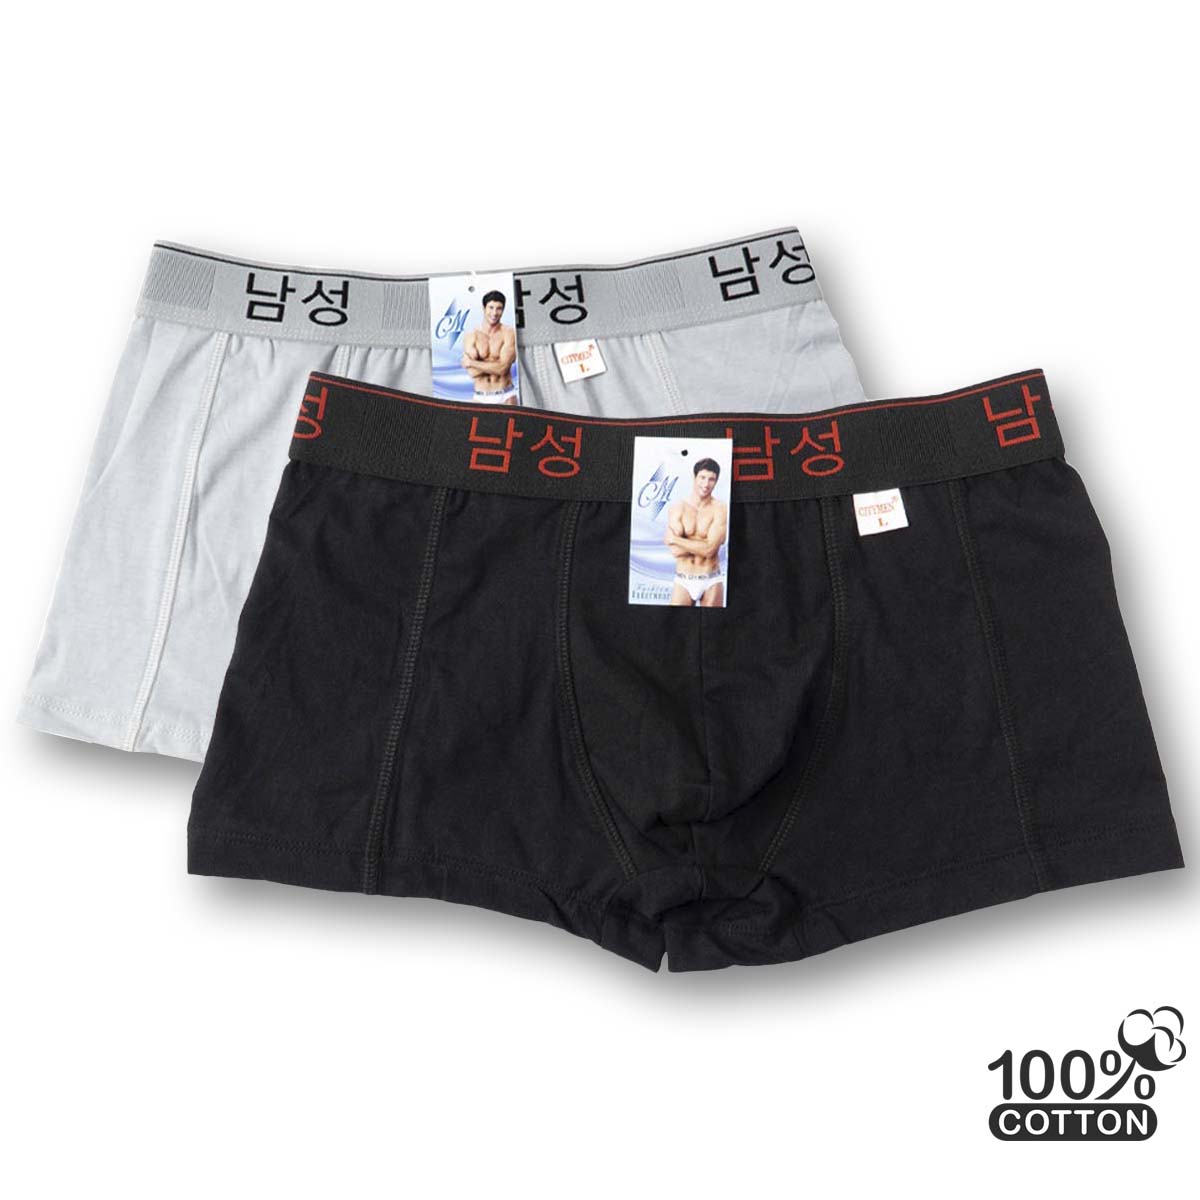 Hình ảnh Combo 4 quần sịp nam boxer cao cấp CITYMEN lưng Hàn Quốc cotton 100% thấm hút tốt co dãn 4 chiều mềm mại thoáng khí, quần lót xịp đùi nam - Giao màu ngẫu nhiên